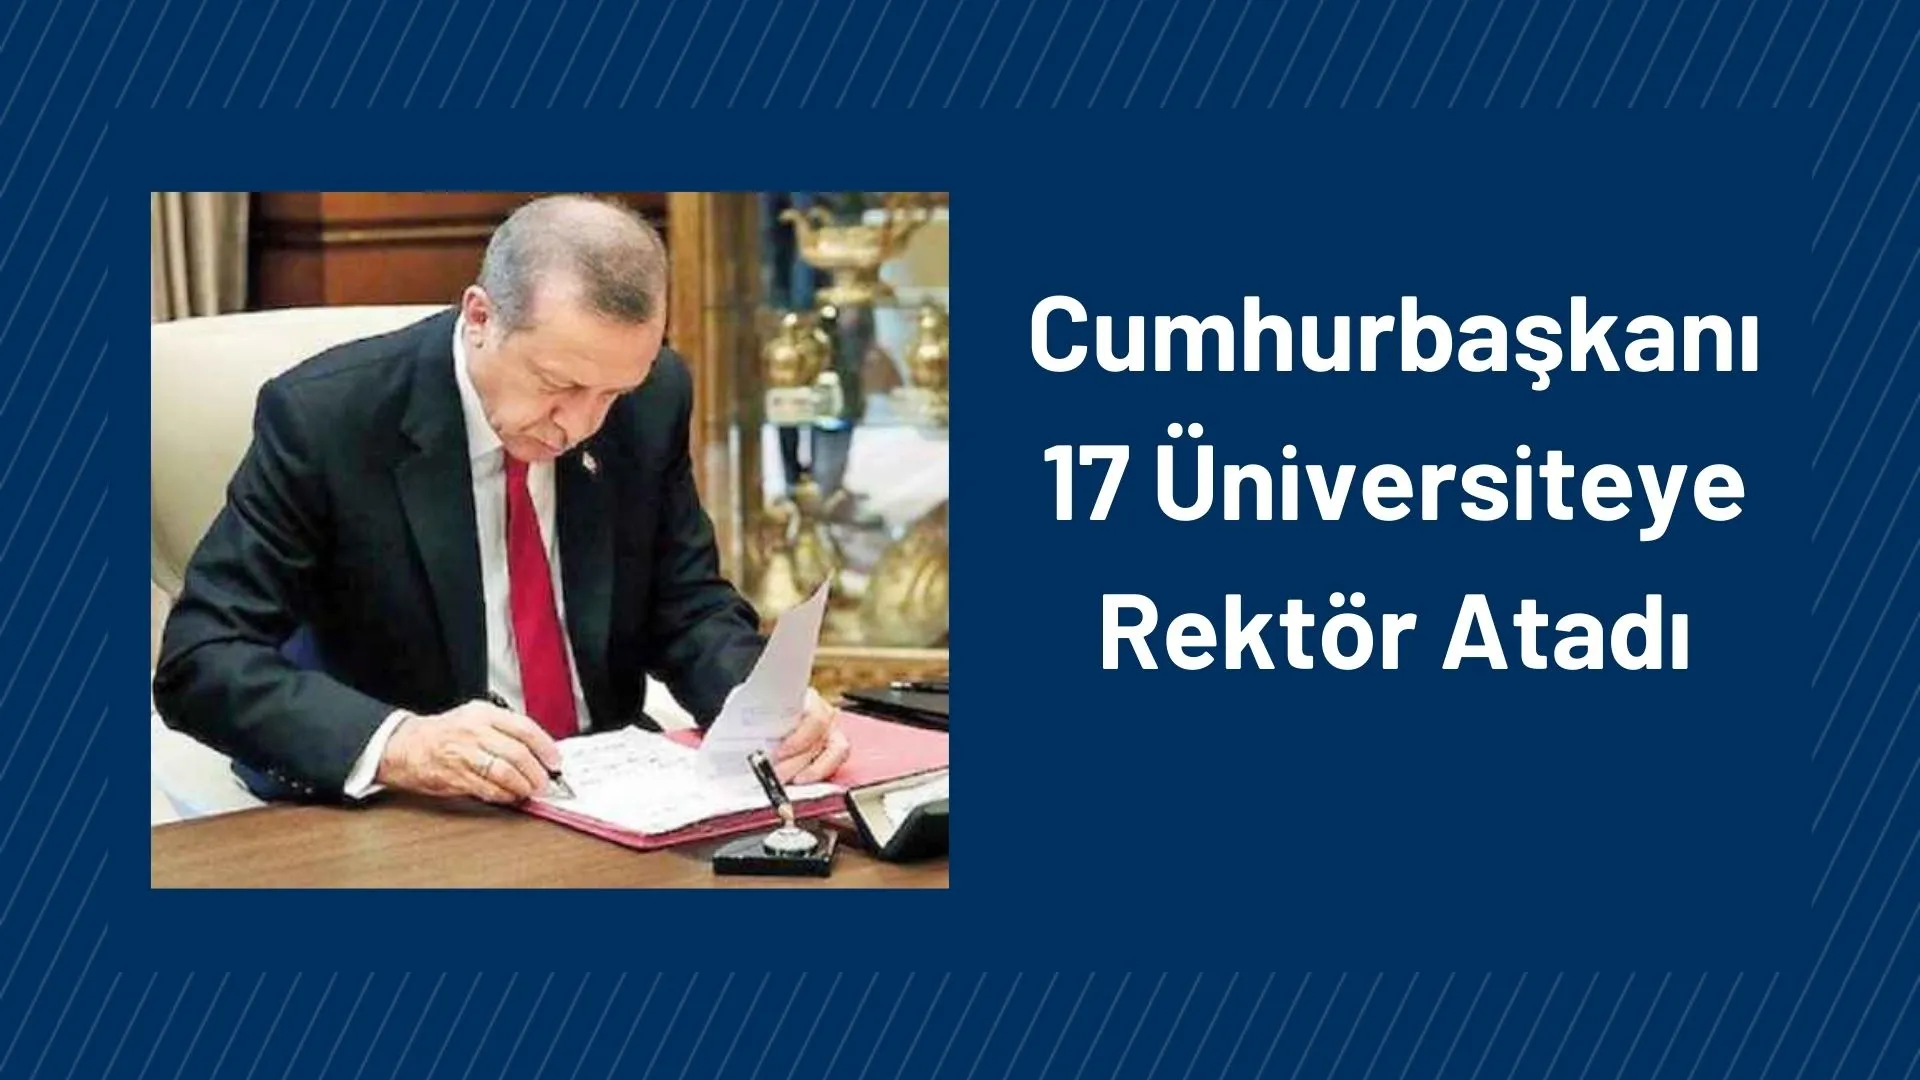 Cumhurbaşkanı Recep Tayyip Erdoğan, Bugün yayımlanan Resmi Gazete ile 17 Üniversiteye Rektör Atadı.